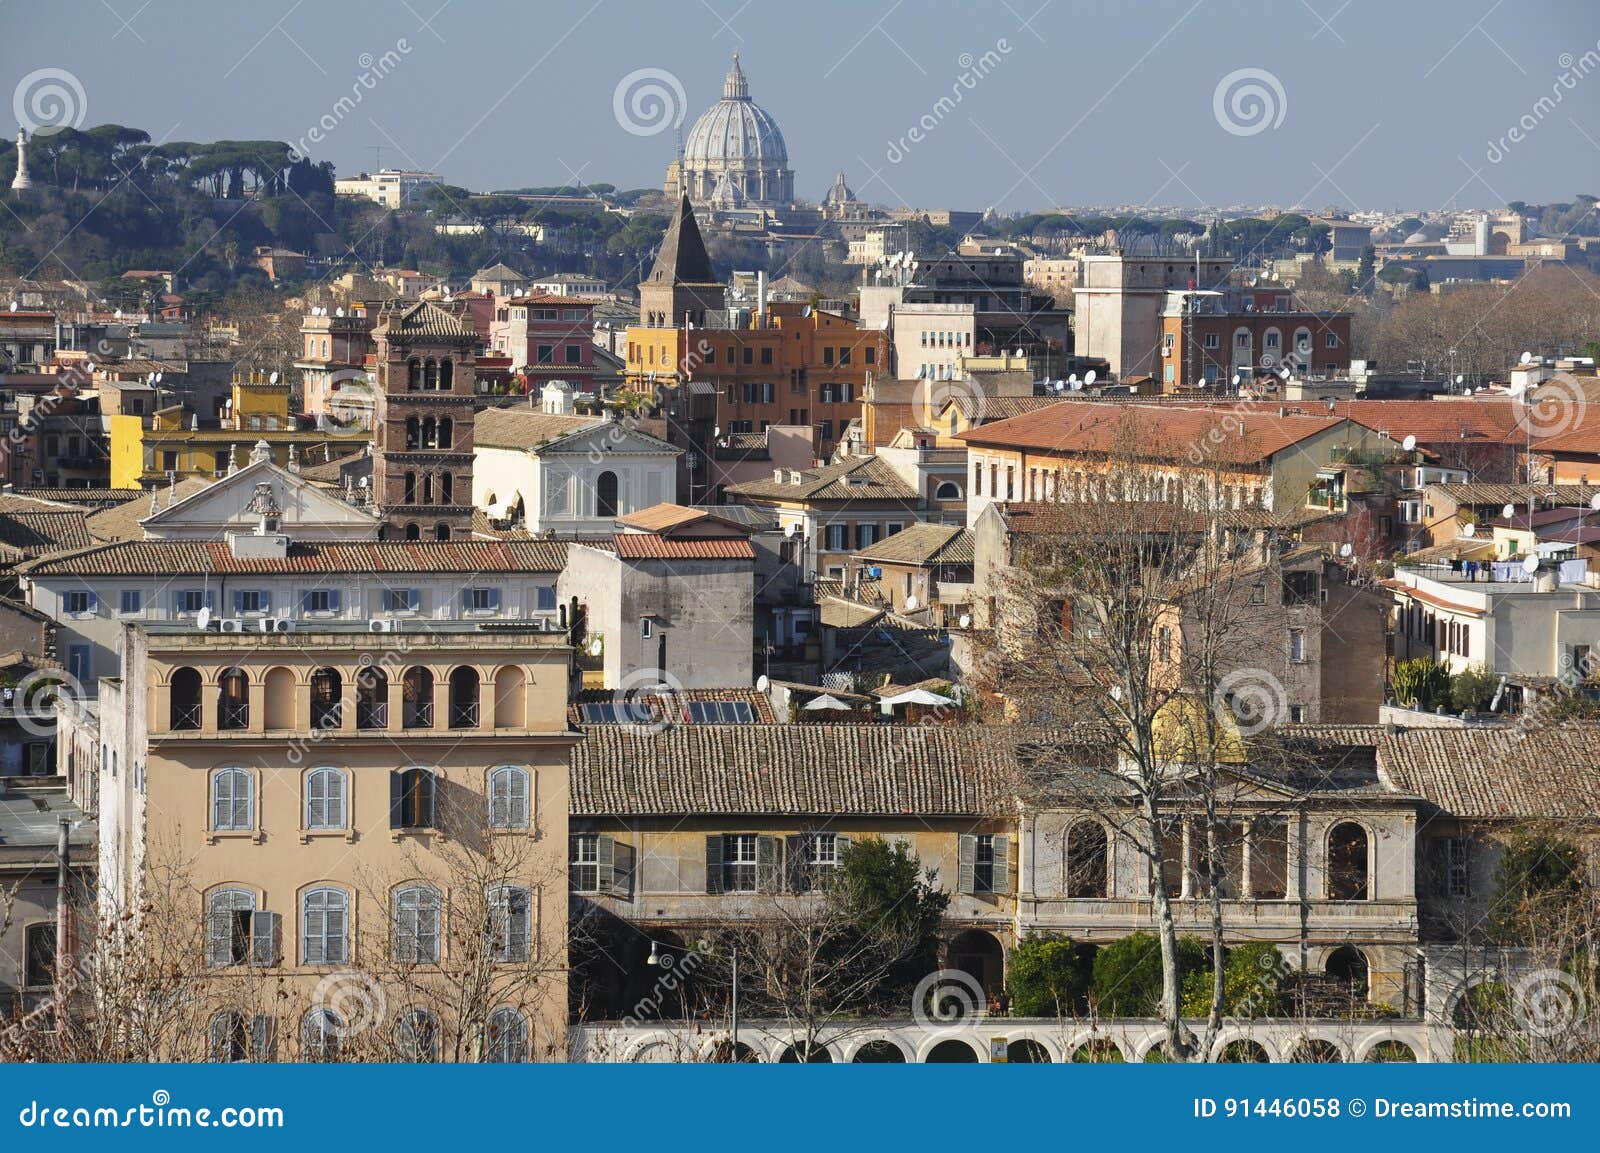 panorama of rome with view of san pietro